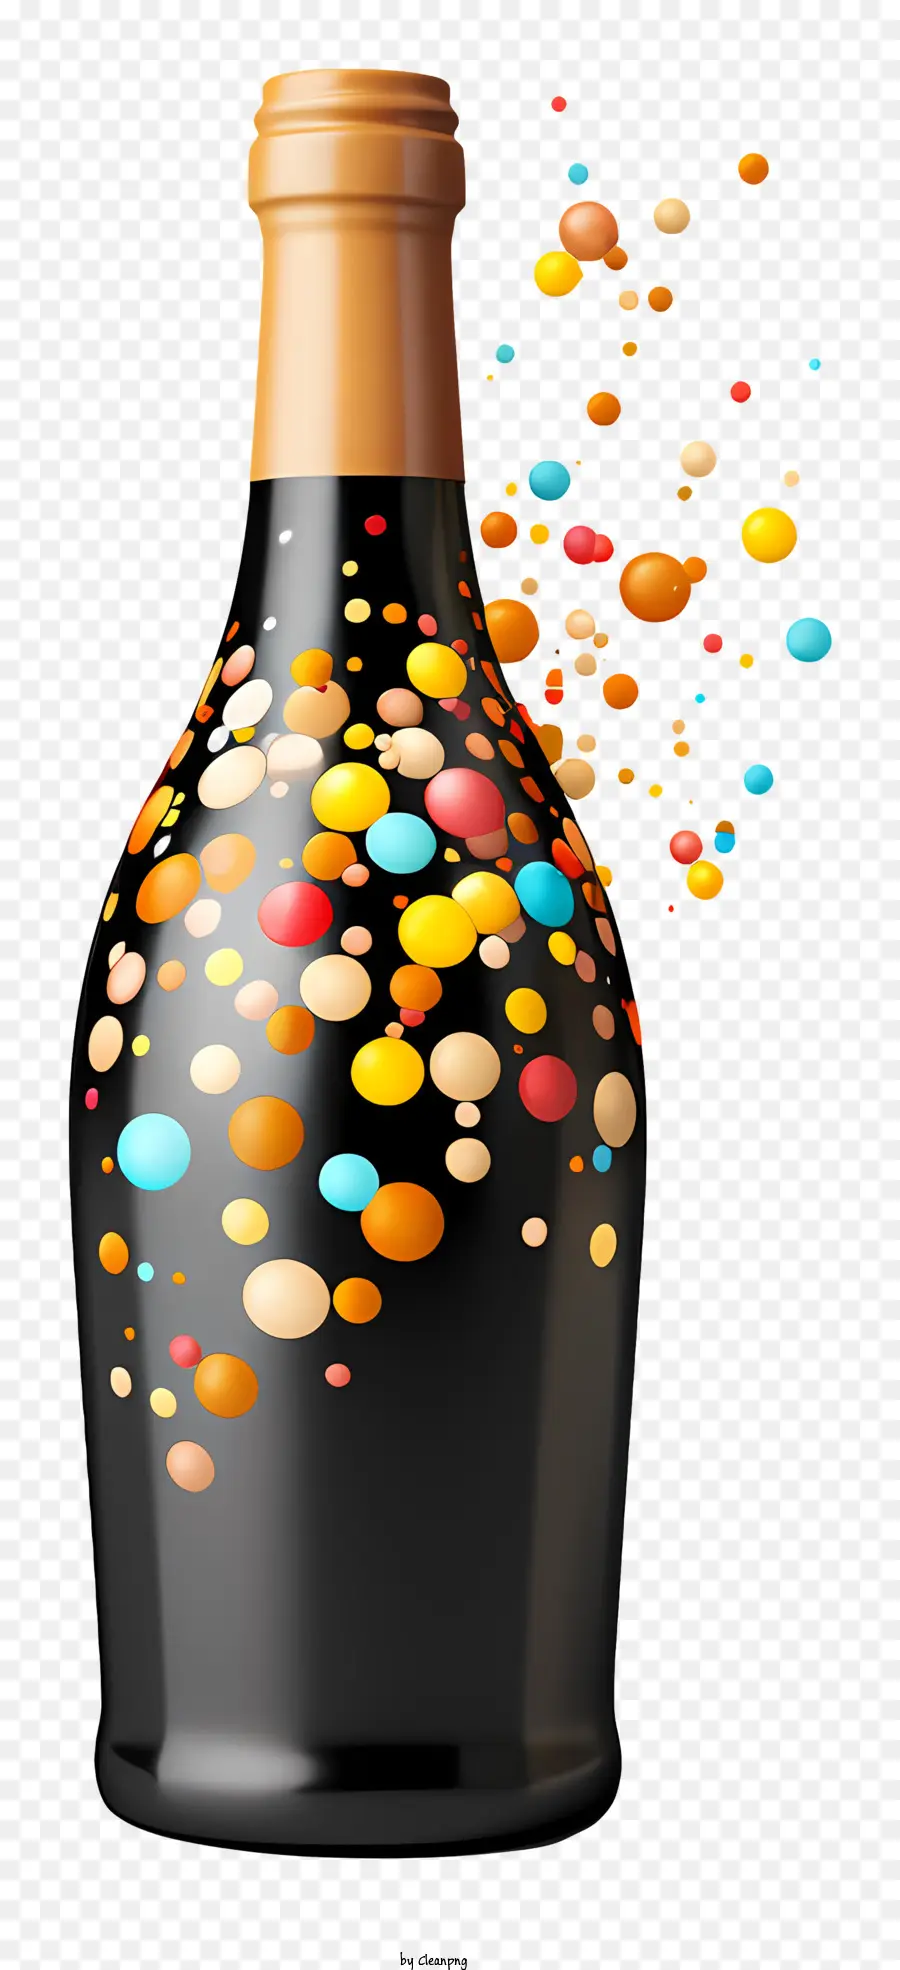 bong bóng chai rượu rót chai đen nhiều màu - Chai rượu chứa đầy bong bóng đầy màu sắc